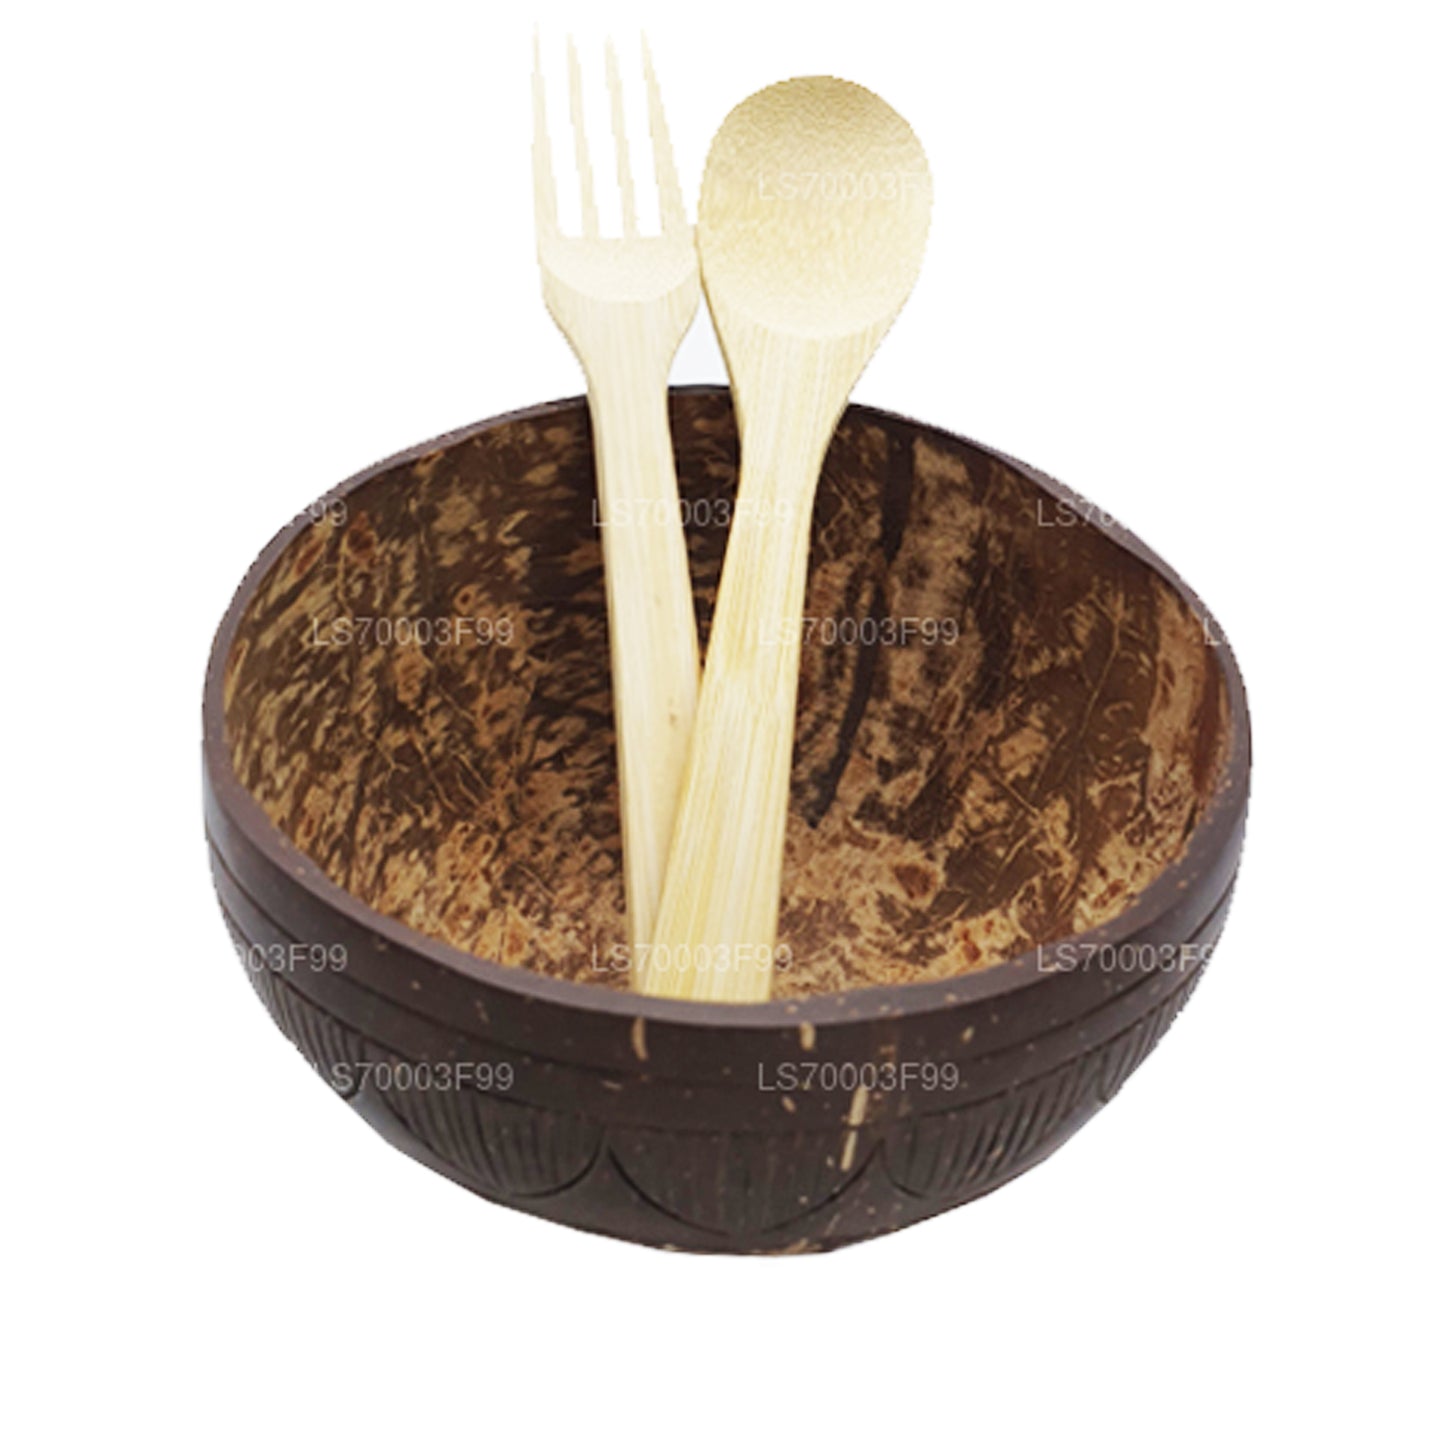 Tazón de batido de cáscara de coco con cuchara y tenedor